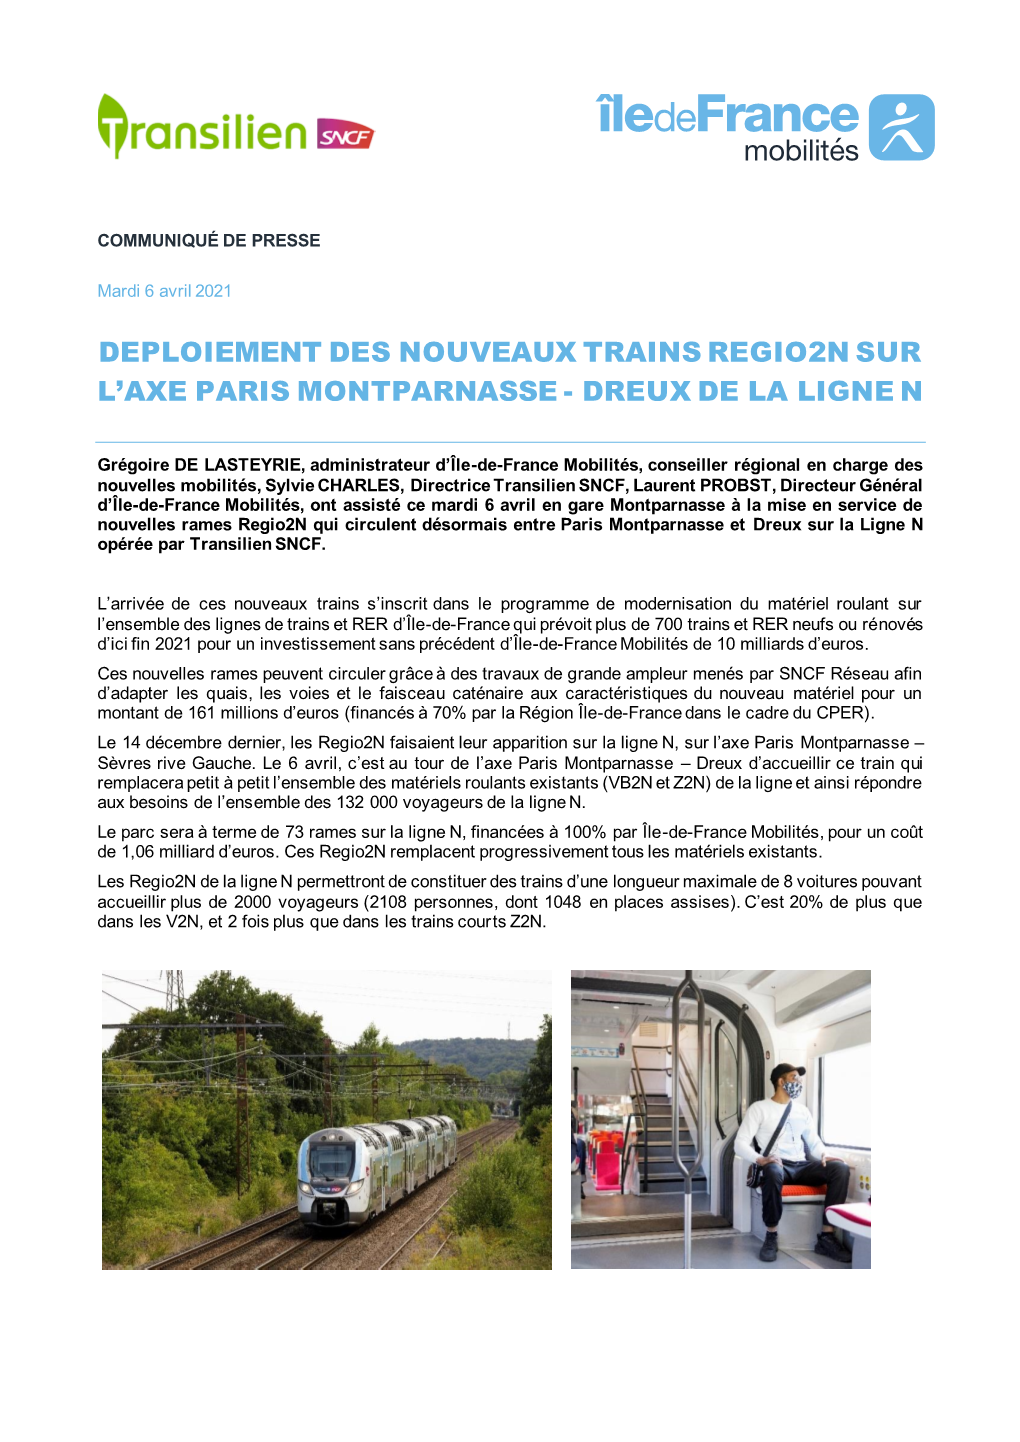 Deploiement Des Nouveaux Trains Regio2n Sur L'axe Paris Montparnasse